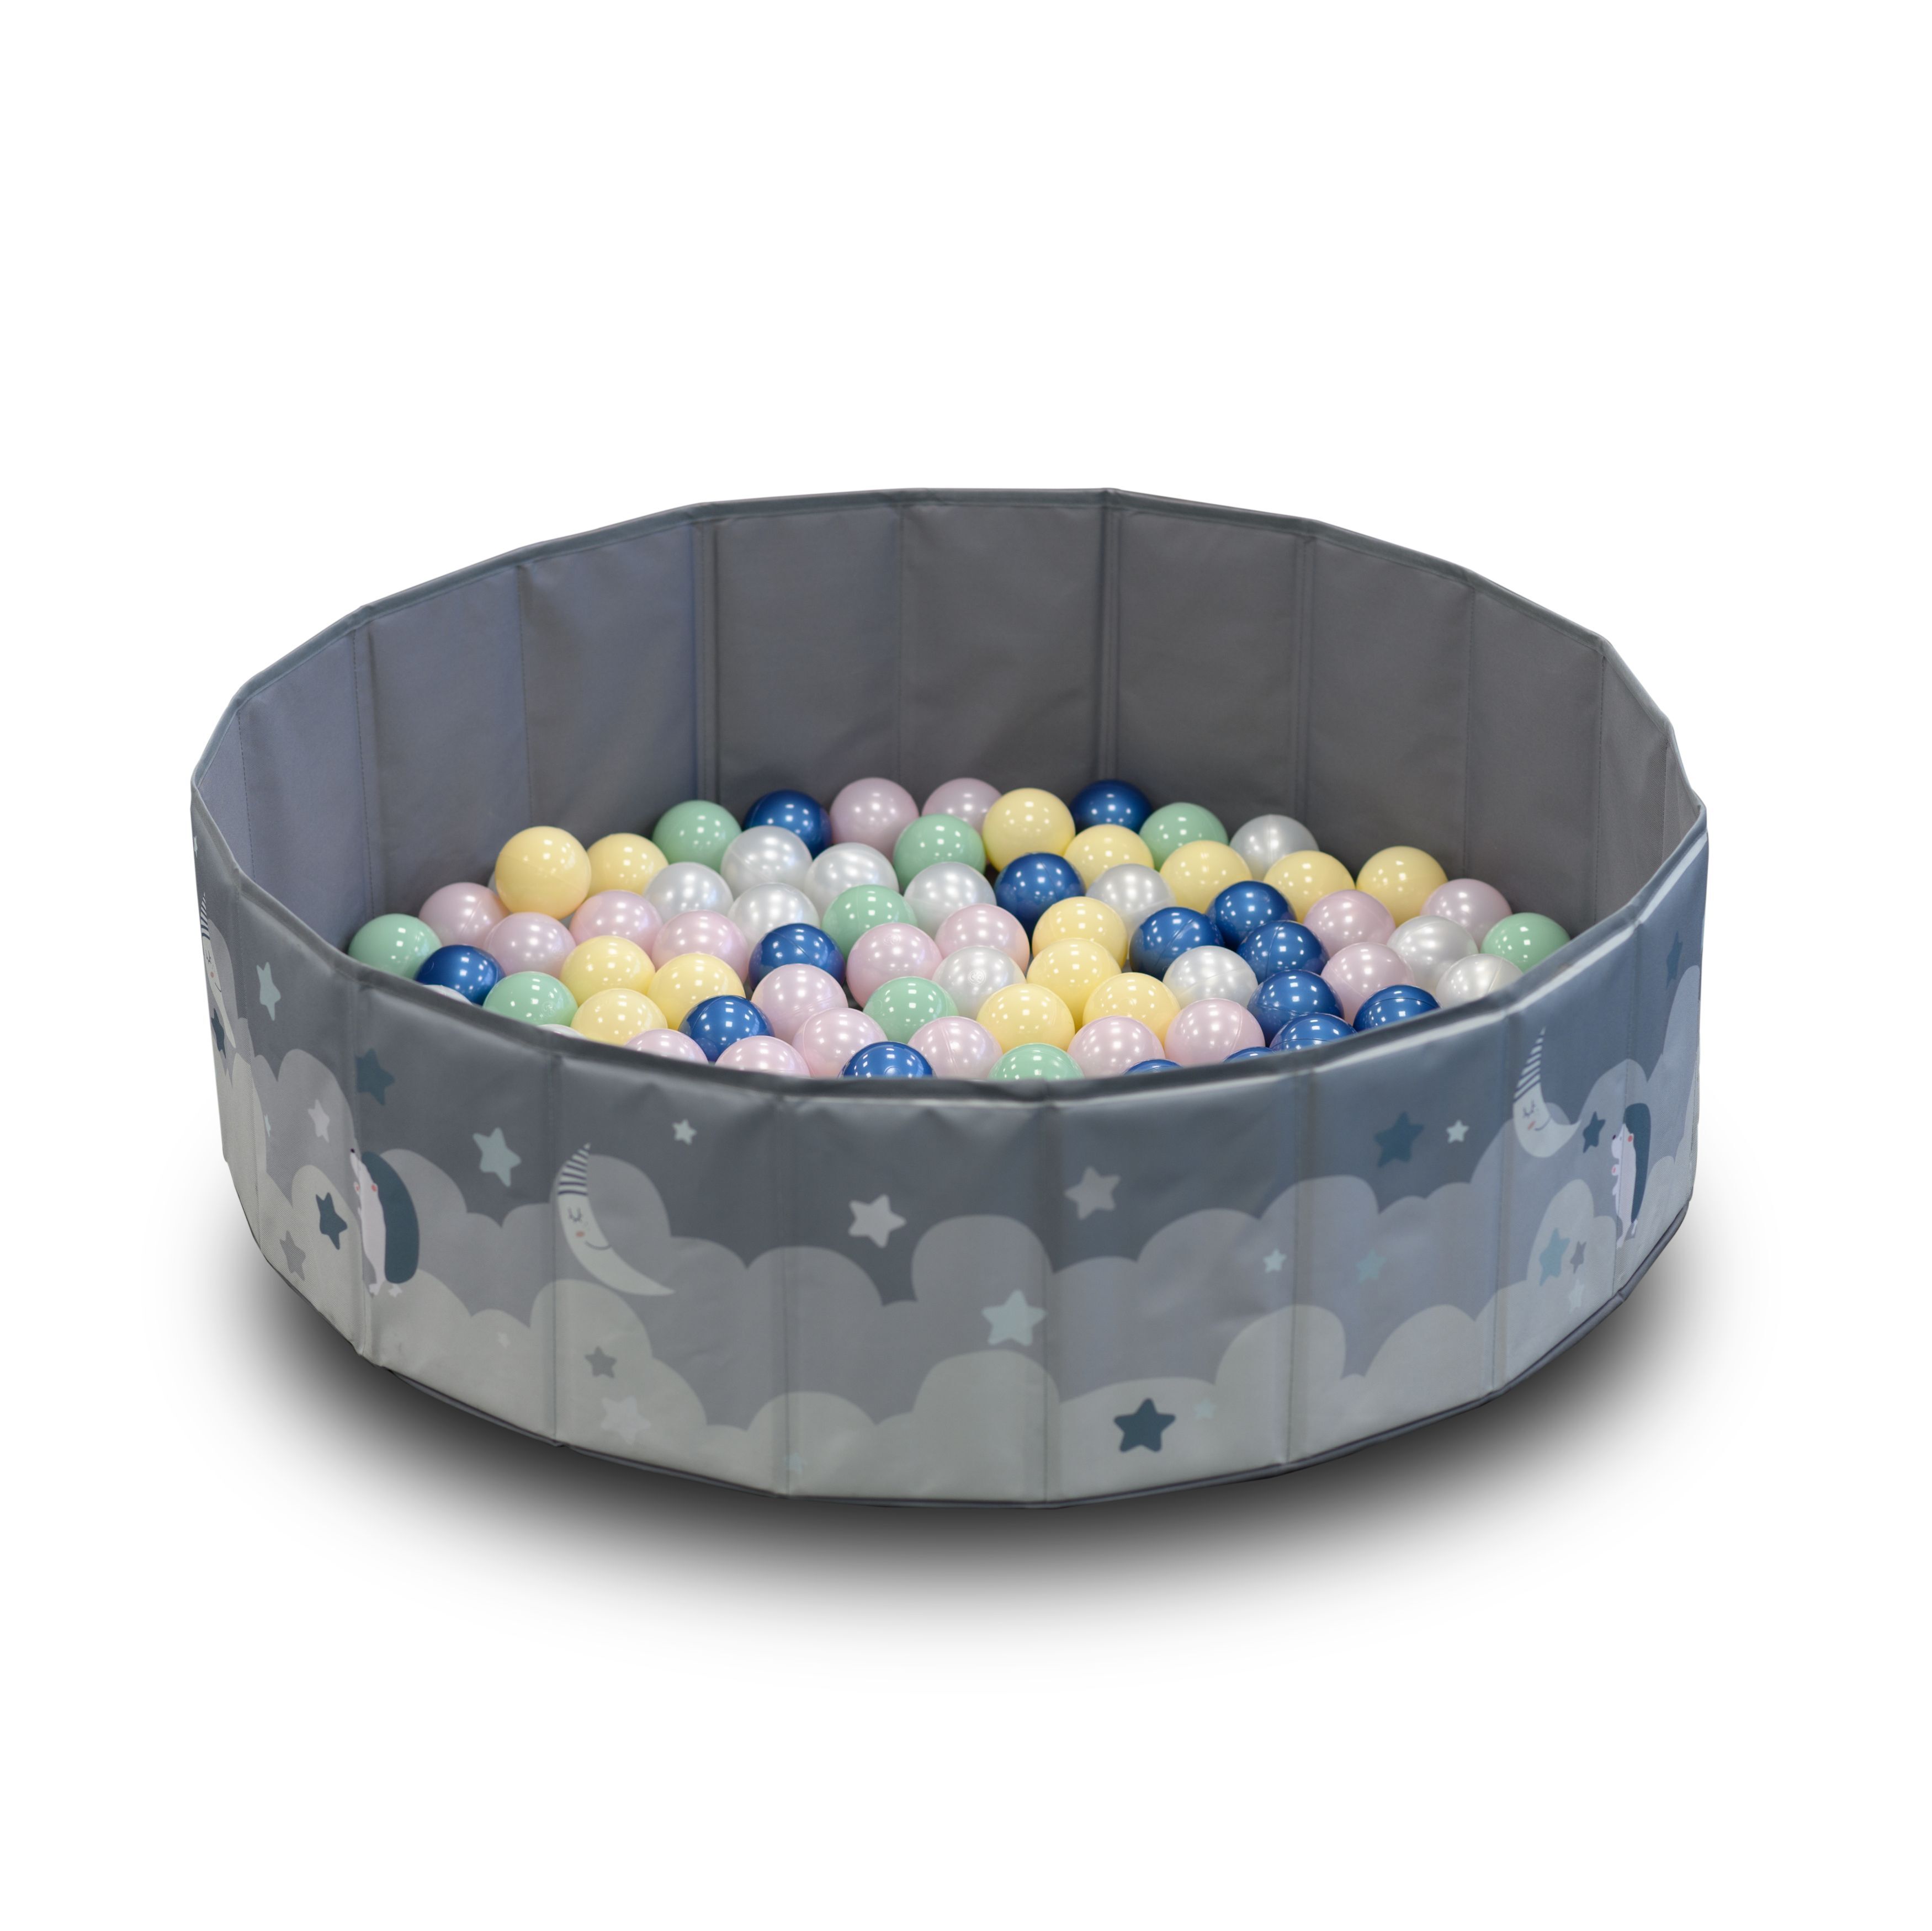 Детский сухой бассейн UNIX Kids Moon Grey, 150 шариков 5 цветов, складной, 100 см детский сухой бассейн romana airpool серый без шариков